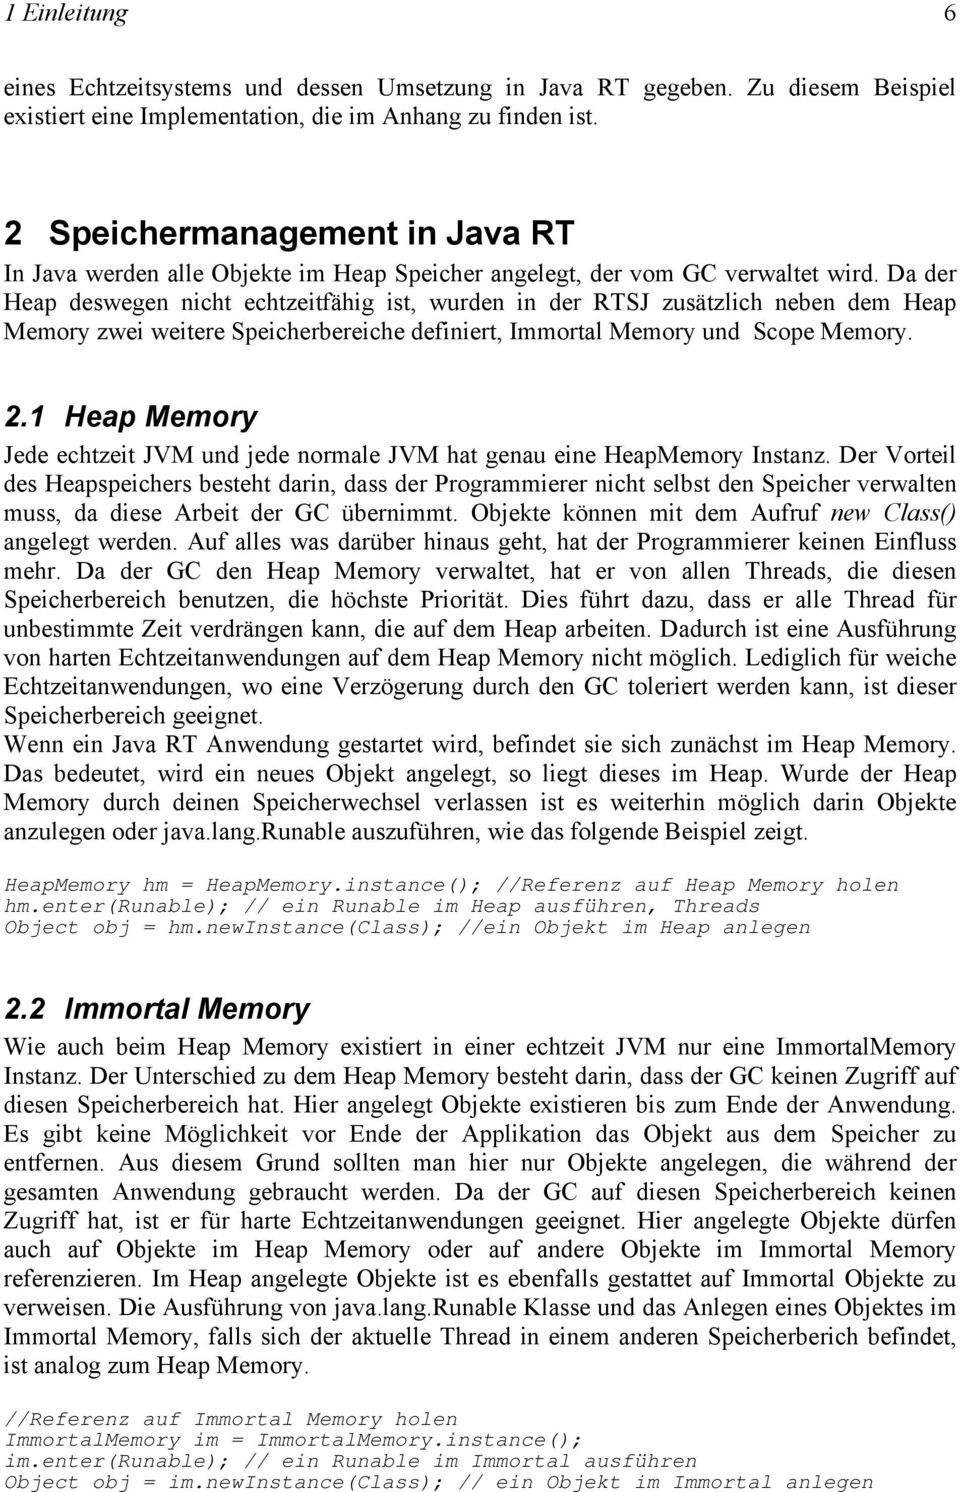 Da der Heap deswegen nicht echtzeitfähig ist, wurden in der RTSJ zusätzlich neben dem Heap Memory zwei weitere Speicherbereiche definiert, Immortal Memory und Scope Memory. 2.